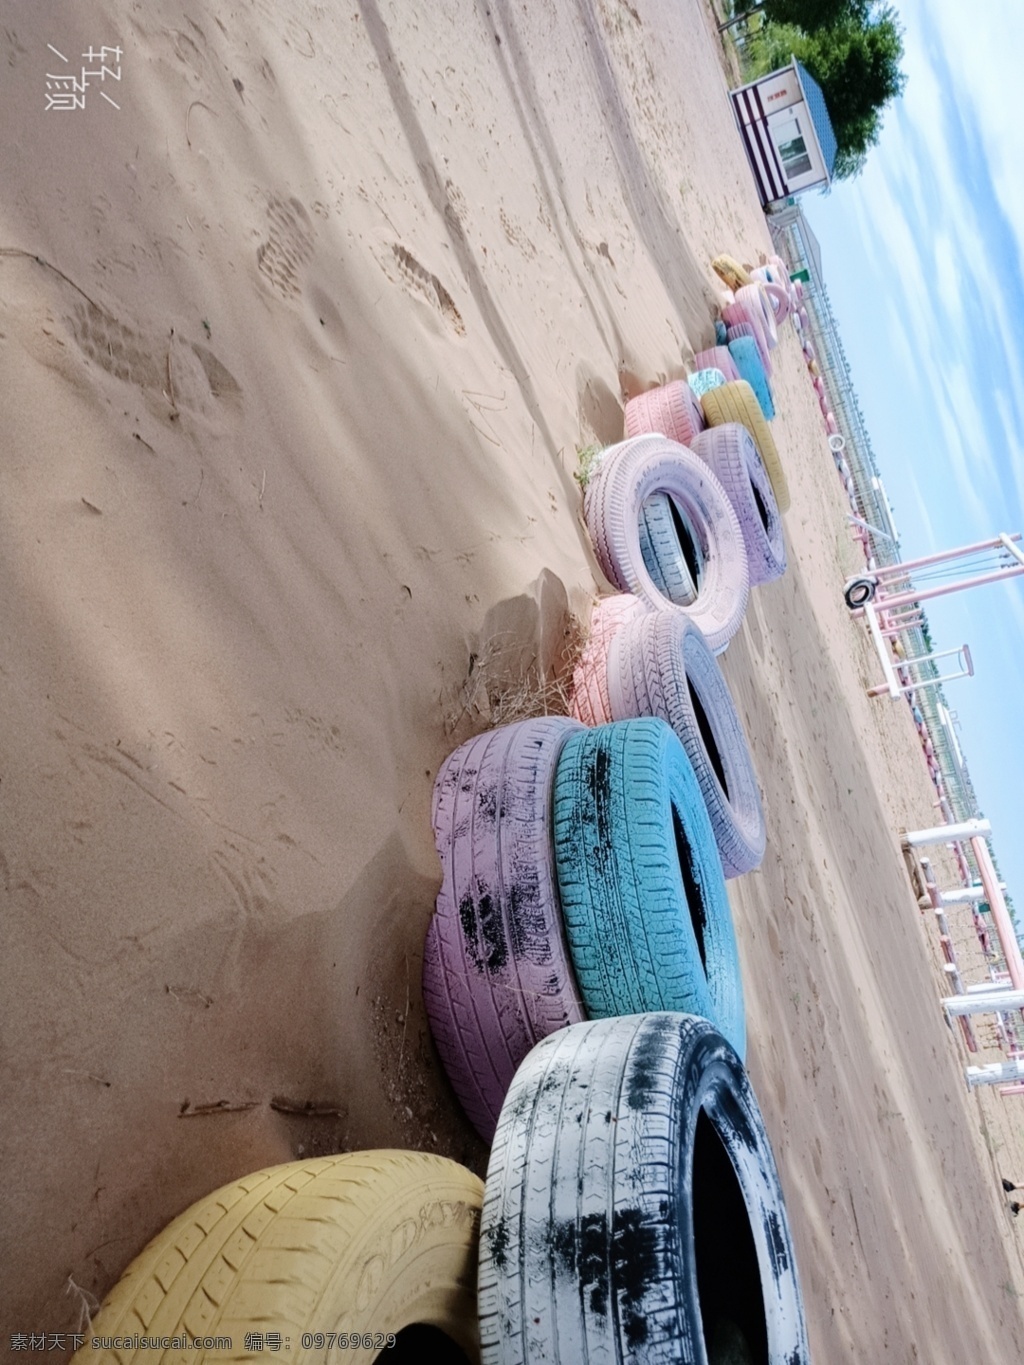 沙滩彩色轮胎 沙滩 马卡龙色 轮胎 小众 蓝天 秋千 旅游摄影 国内旅游